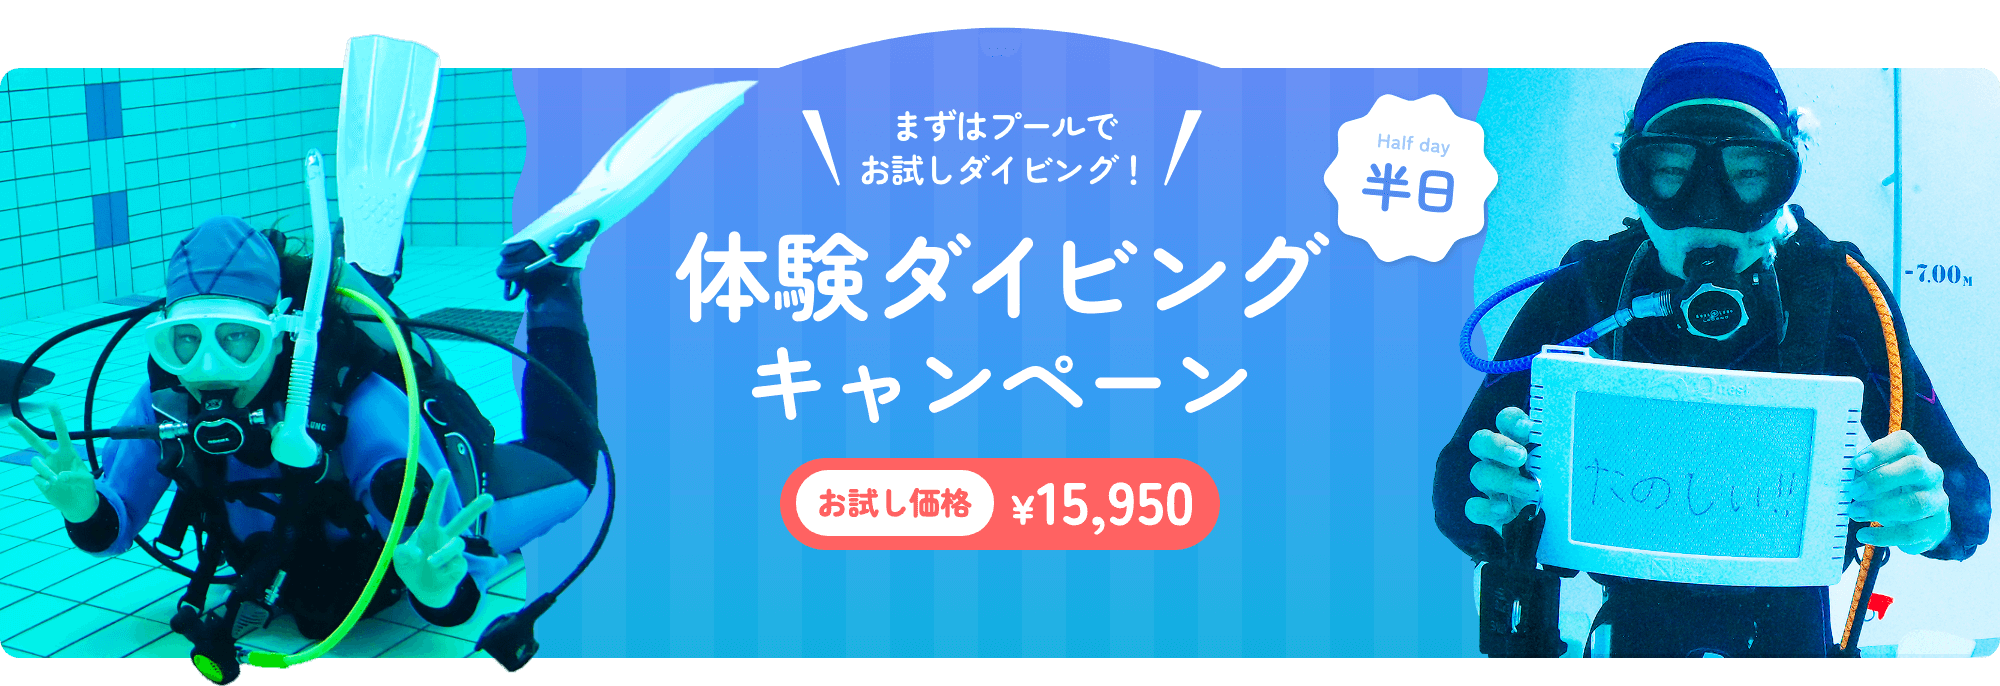 まずはプールでお試しダイビング 体験ダイビングキャンペーン お試し価格¥15,950